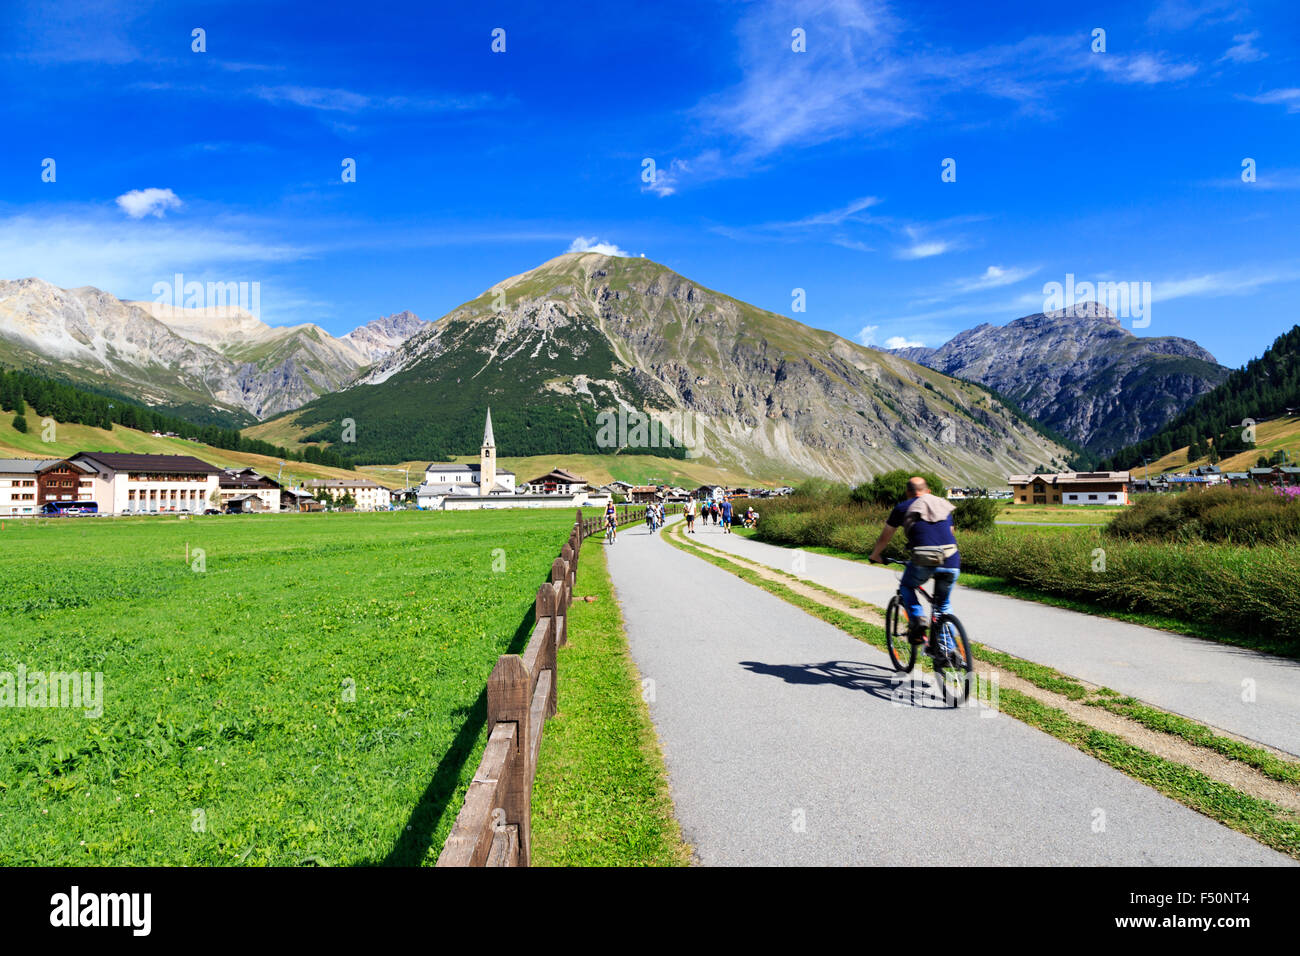 Mann Radfahren entlang einer Straße durch einen grünen Tal in Livigno, Italien in Richtung einer weit entfernten Stadt am Fuße der majestätischen Alpen Erbse Stockfoto